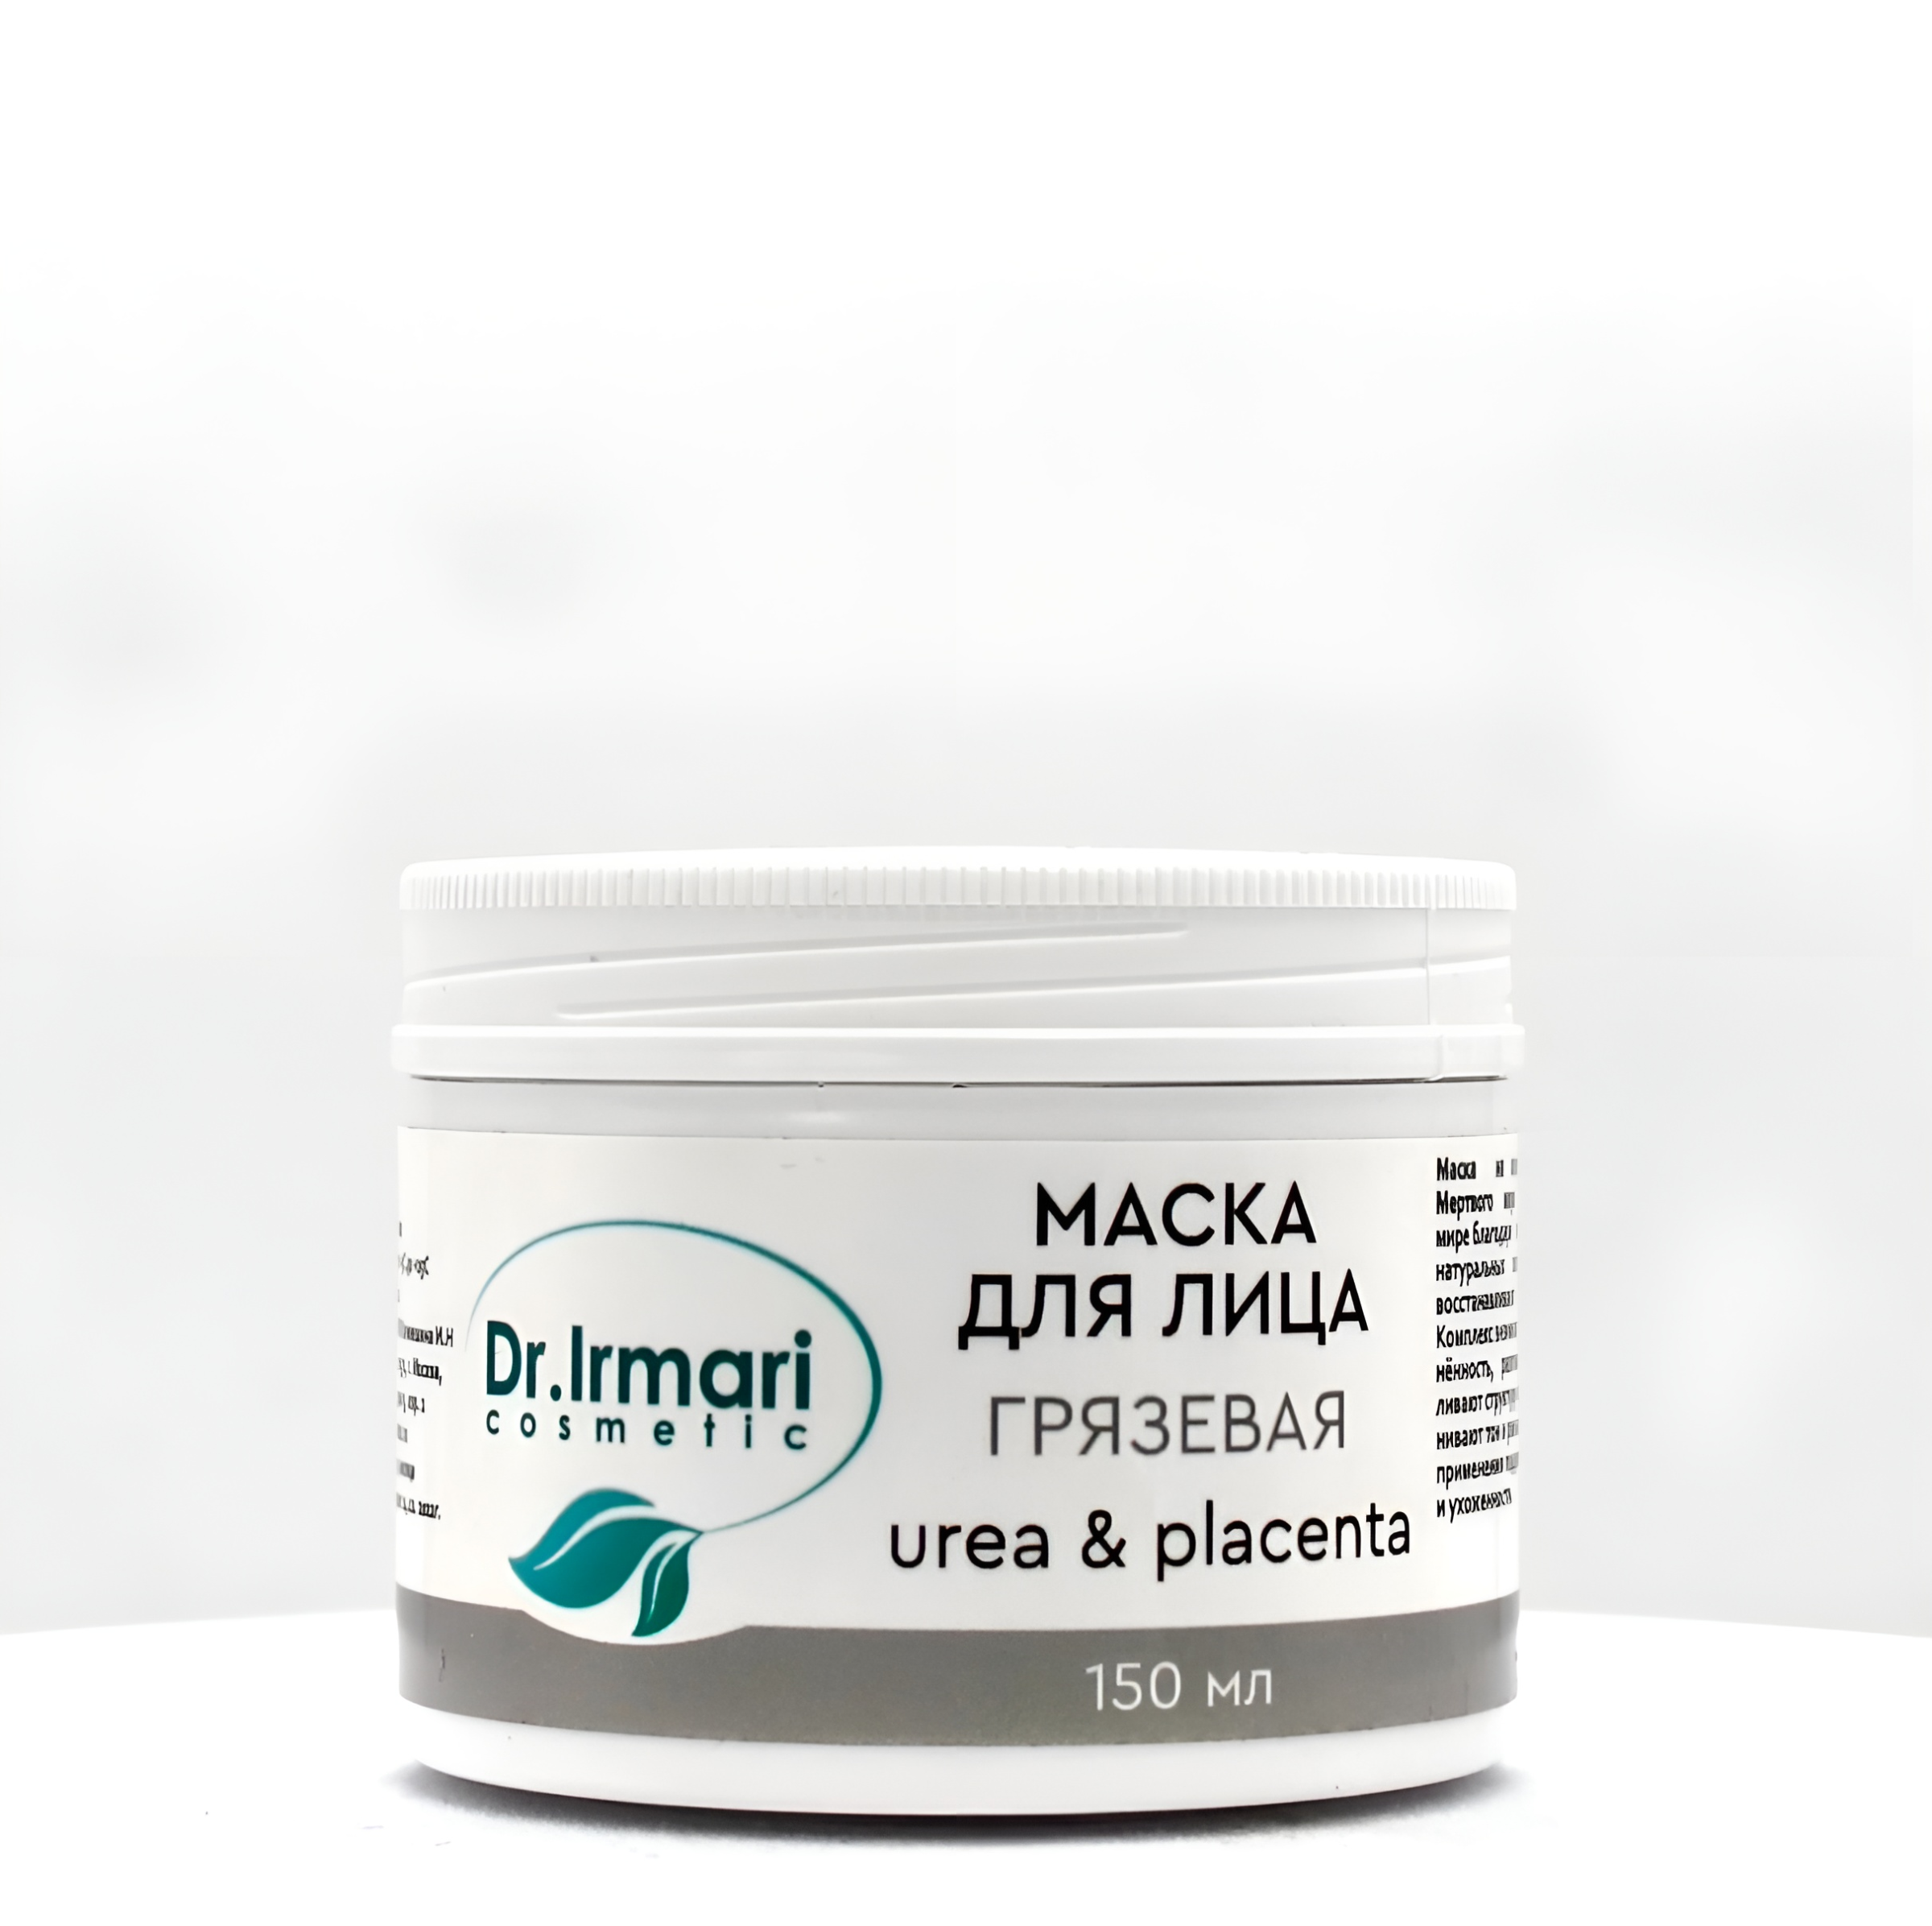 Маска для лица Dr.Irmari cosmetic Urea & Placenta Грязевая 150 мл подарочный набор dizao маски для лица шеи и области глаз в упаковке 14 шт